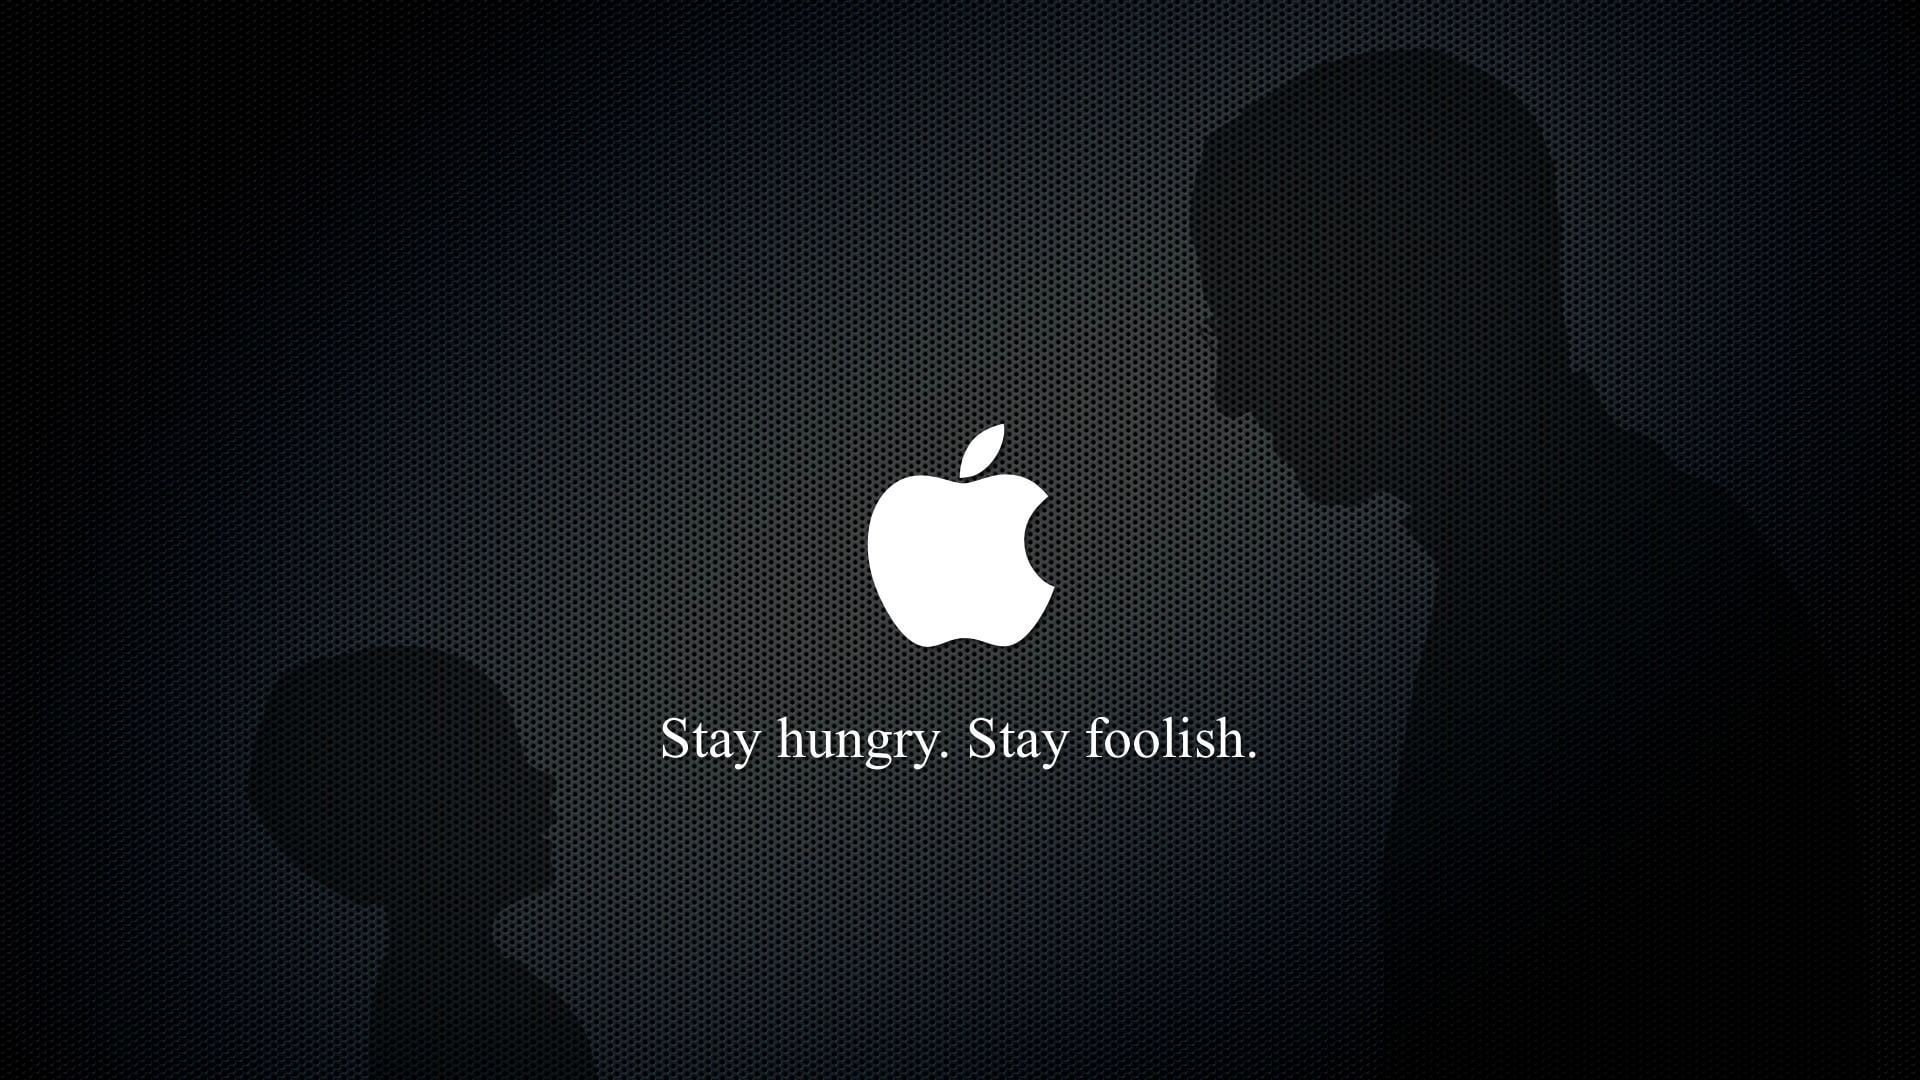 Apples, funny, Jobs, Steve